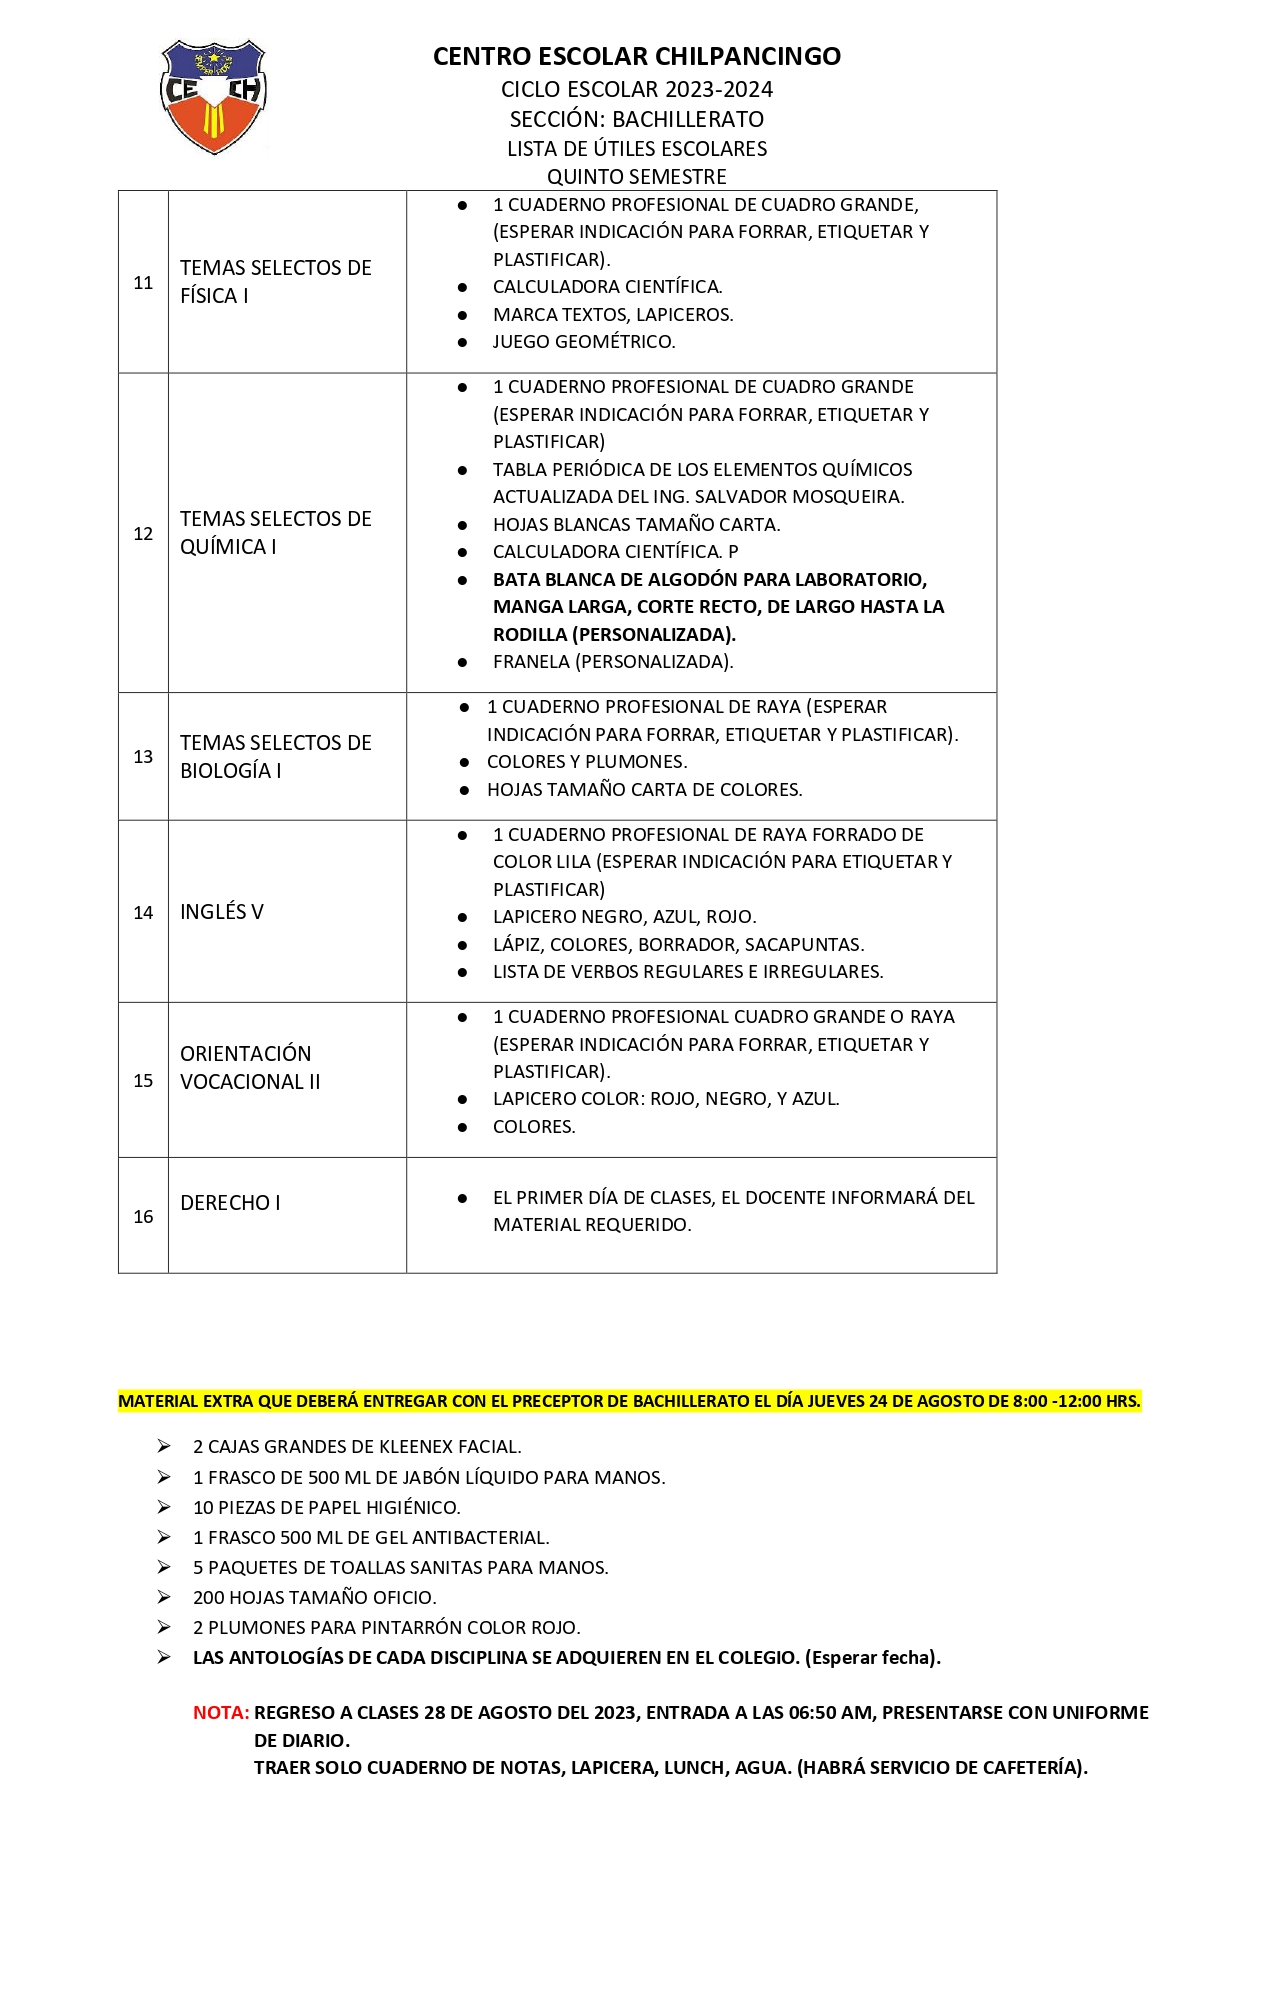 Lista de Útiles Escolares para Educación Básica Ciclo Escolar 2022-2023, Secretaría de Educación Pública, Gobierno